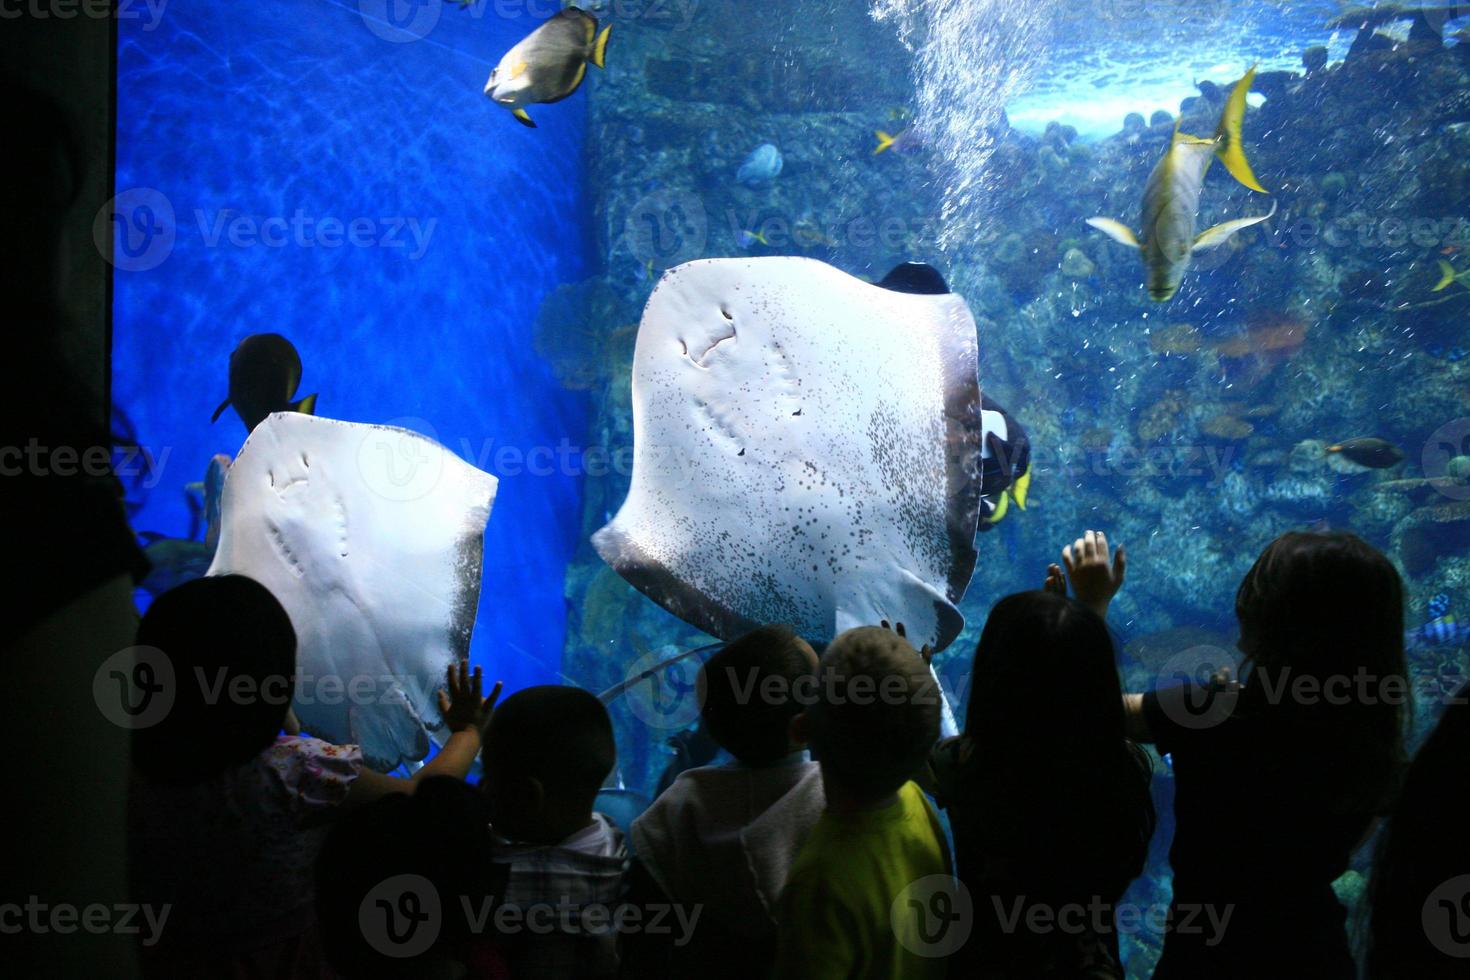 razze in un acquario gigante con i bambini che guardano foto